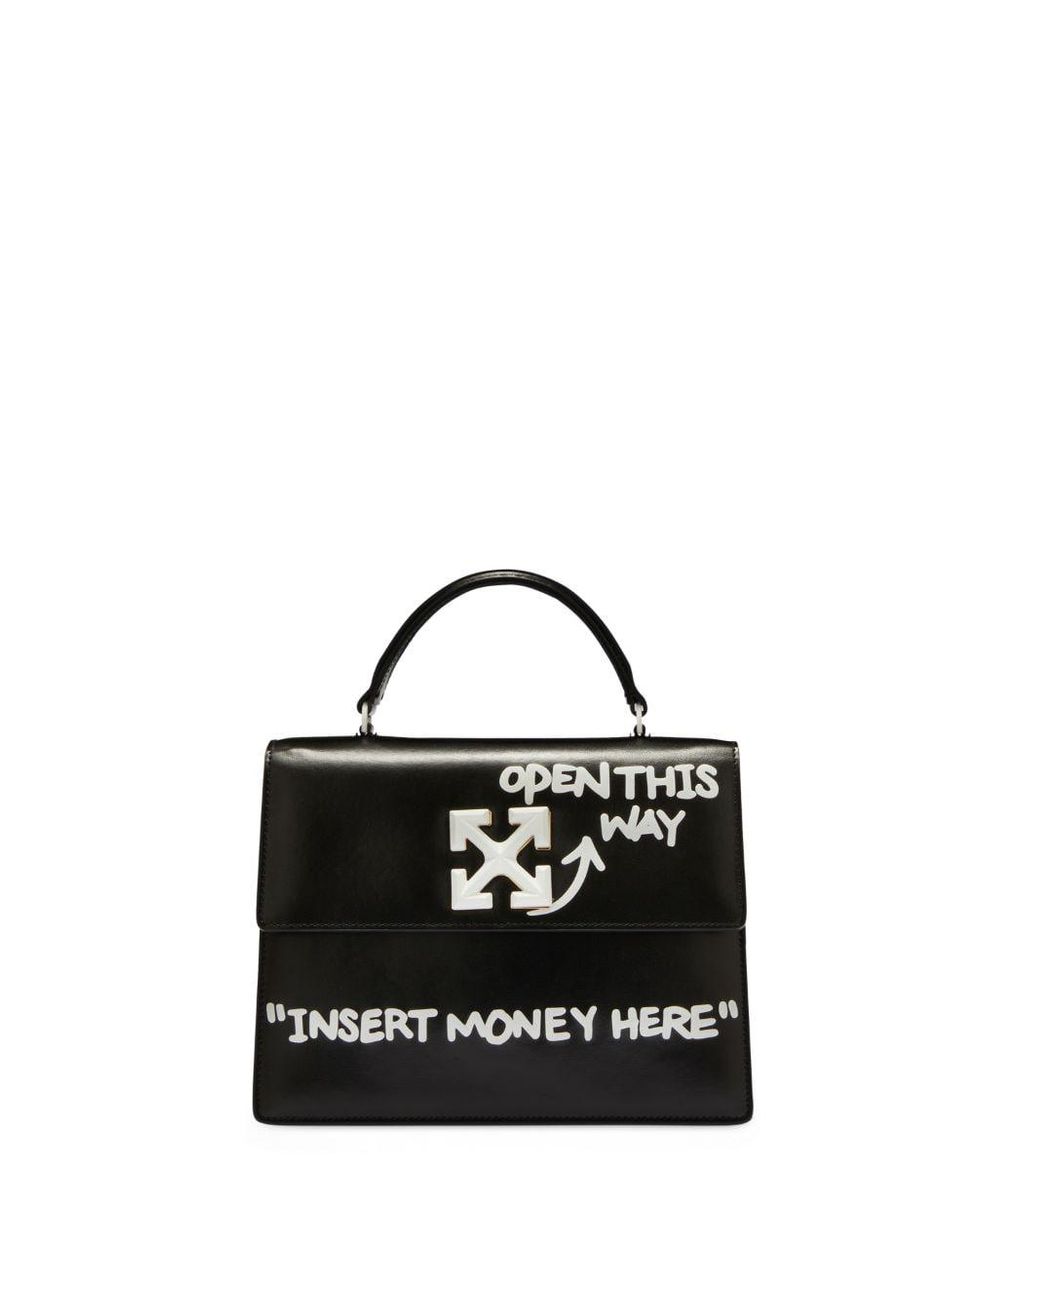 Off-White c/o Virgil Abloh Jitney 1.4 'Cash Inside' Shoulder Bag